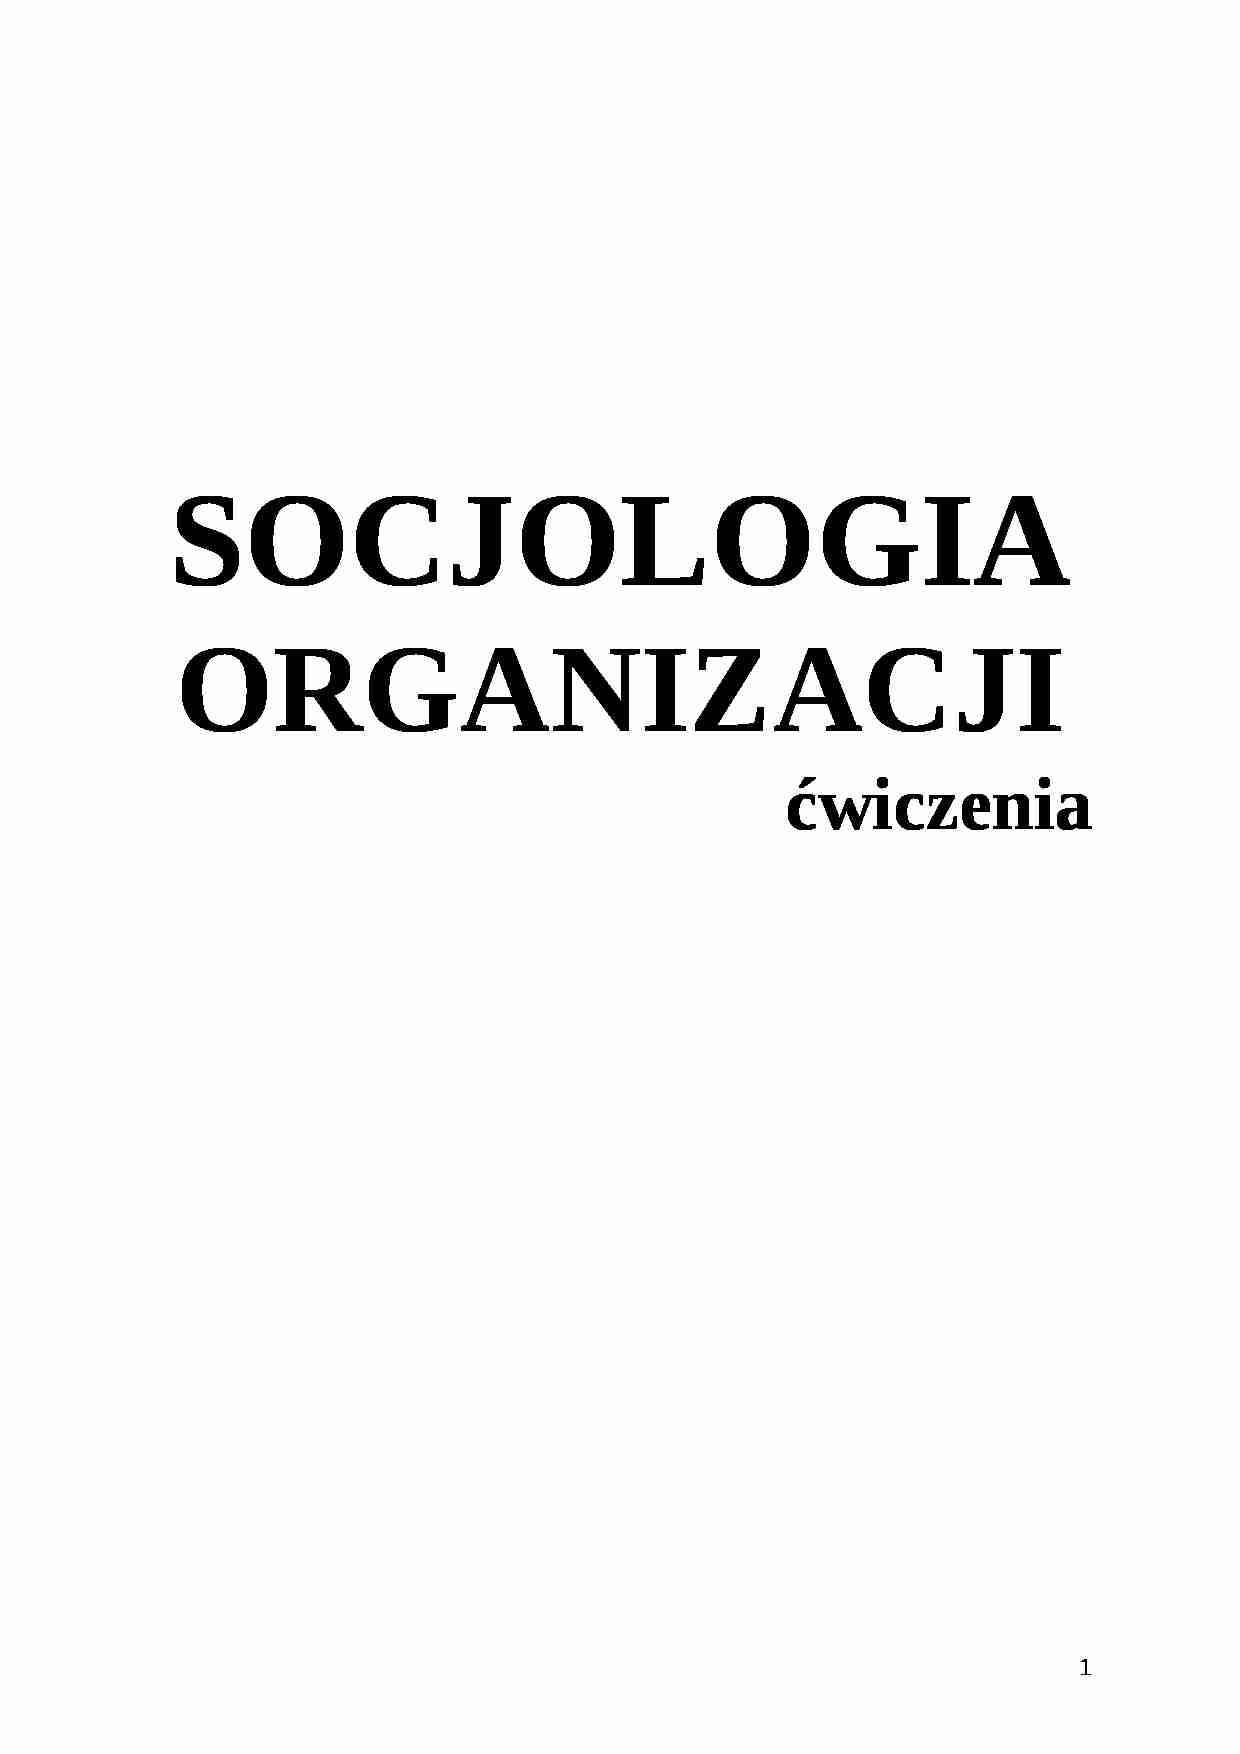 Socjologia - skrypt - Organizacja pozarządowa - strona 1